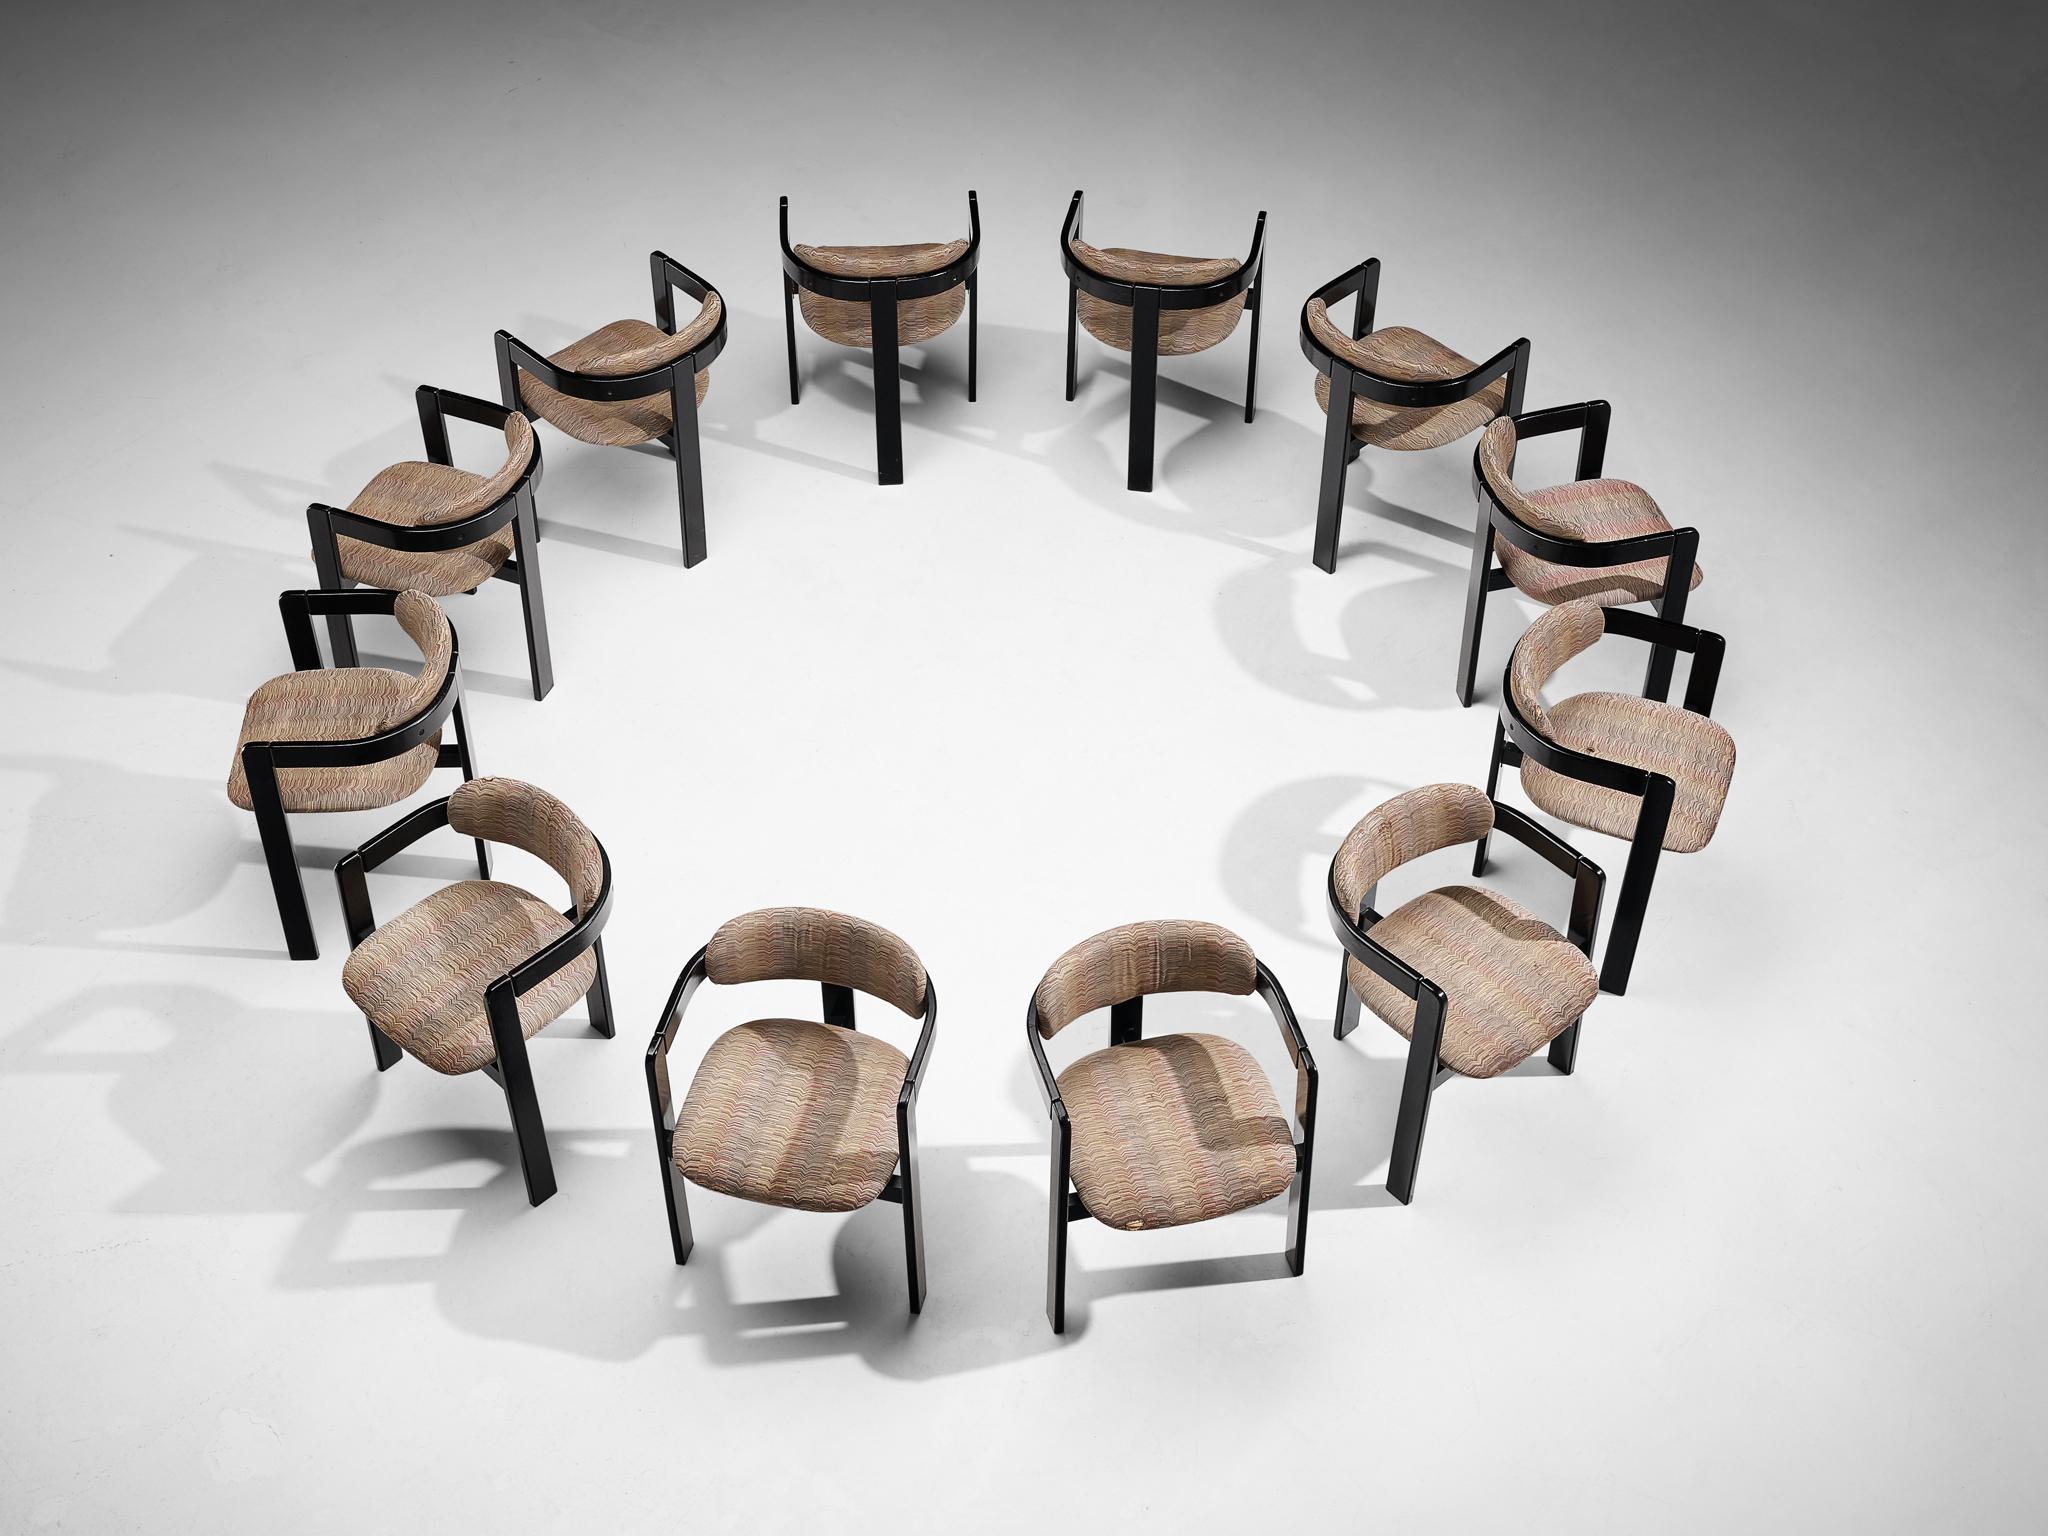 Satz von zwölf Esszimmerstühlen, Holz, Stoff, Italien, 1970er Jahre

Dieses schöne Set italienischer Esszimmerstühle ähnelt stark dem Stuhl 